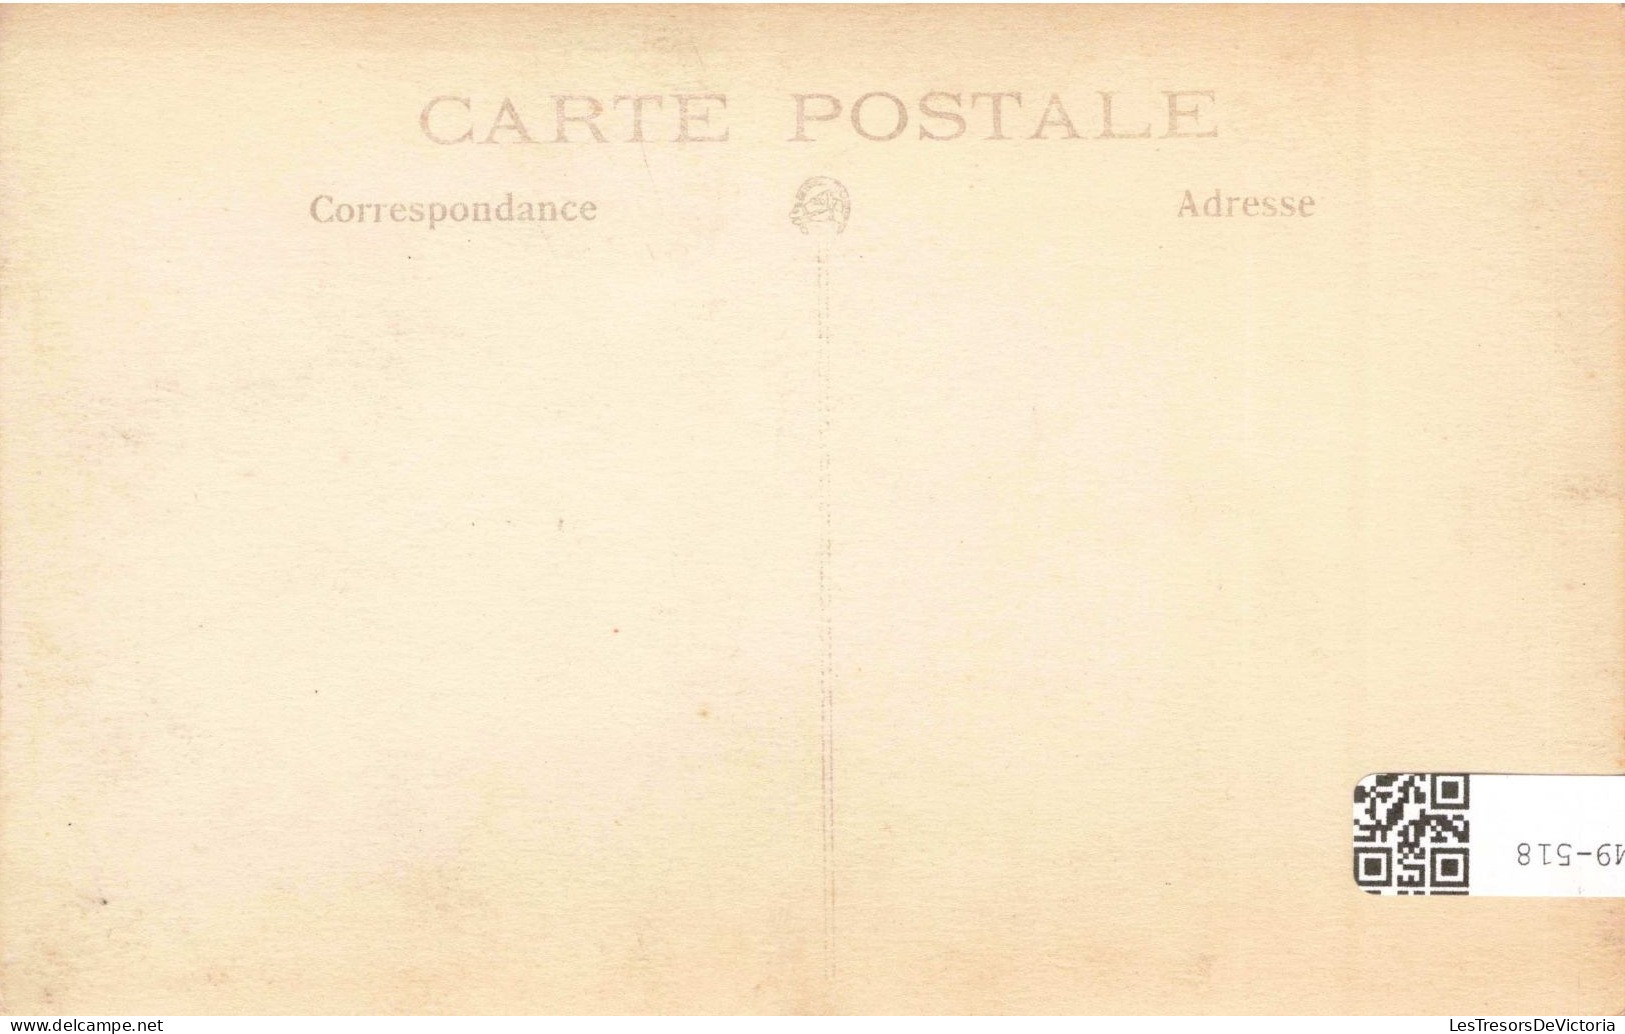 CARTE PHOTO - Un Jeune Homme Avec Des Lunettes - Carte Postale Ancienne - Photographie